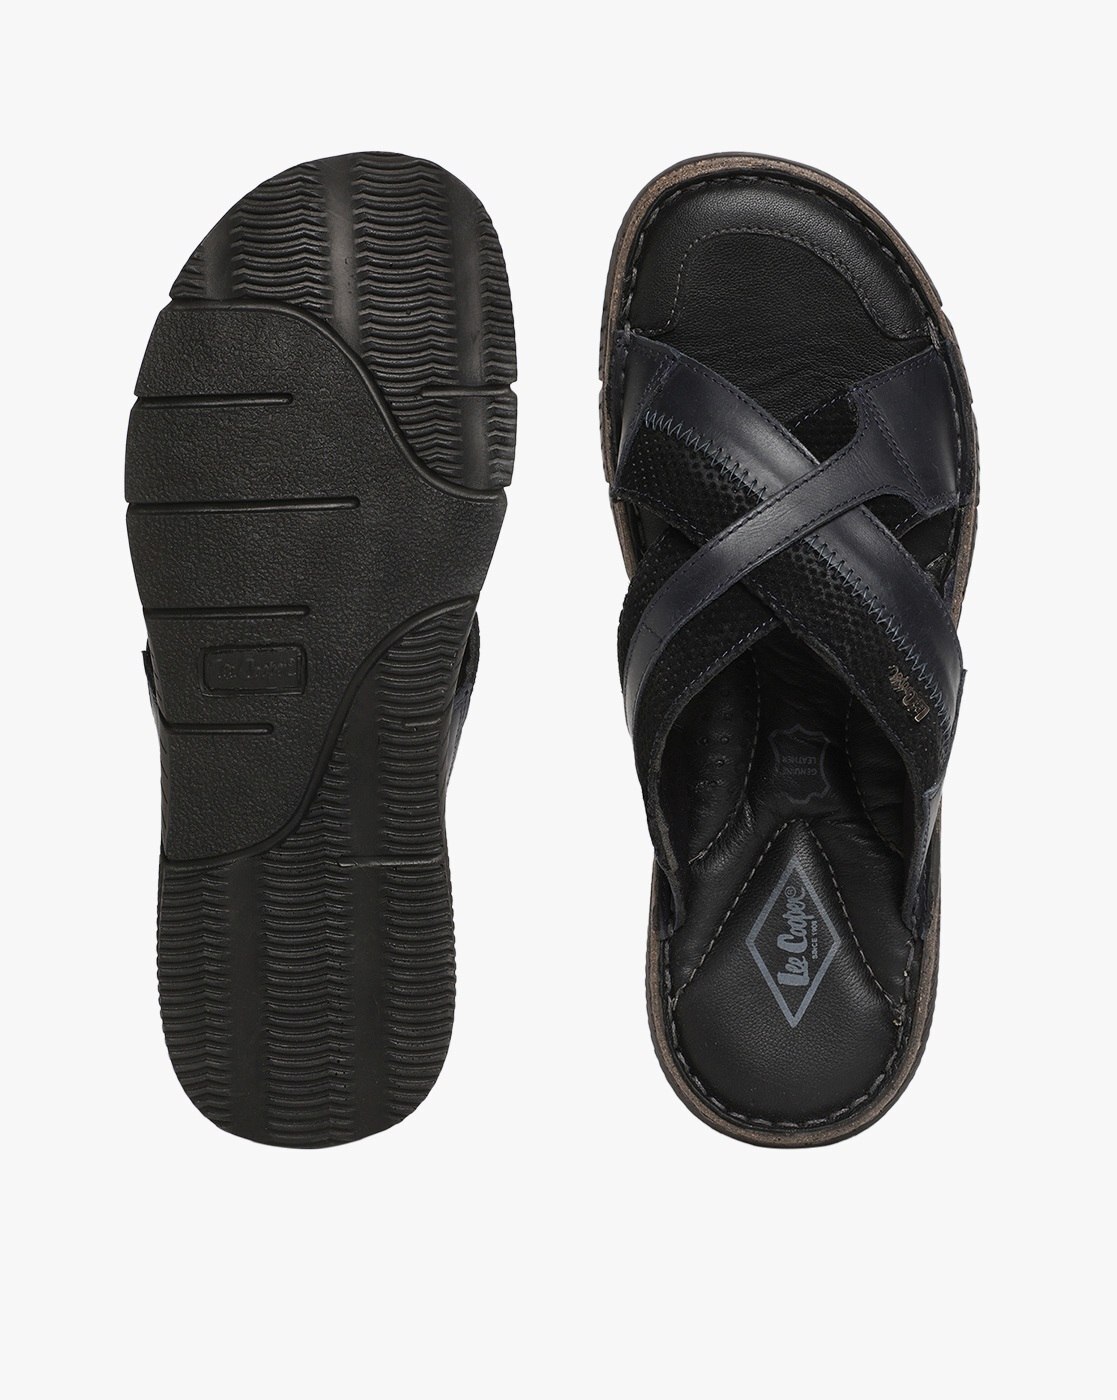 Black cork sandals from Lee Cooper | eBay